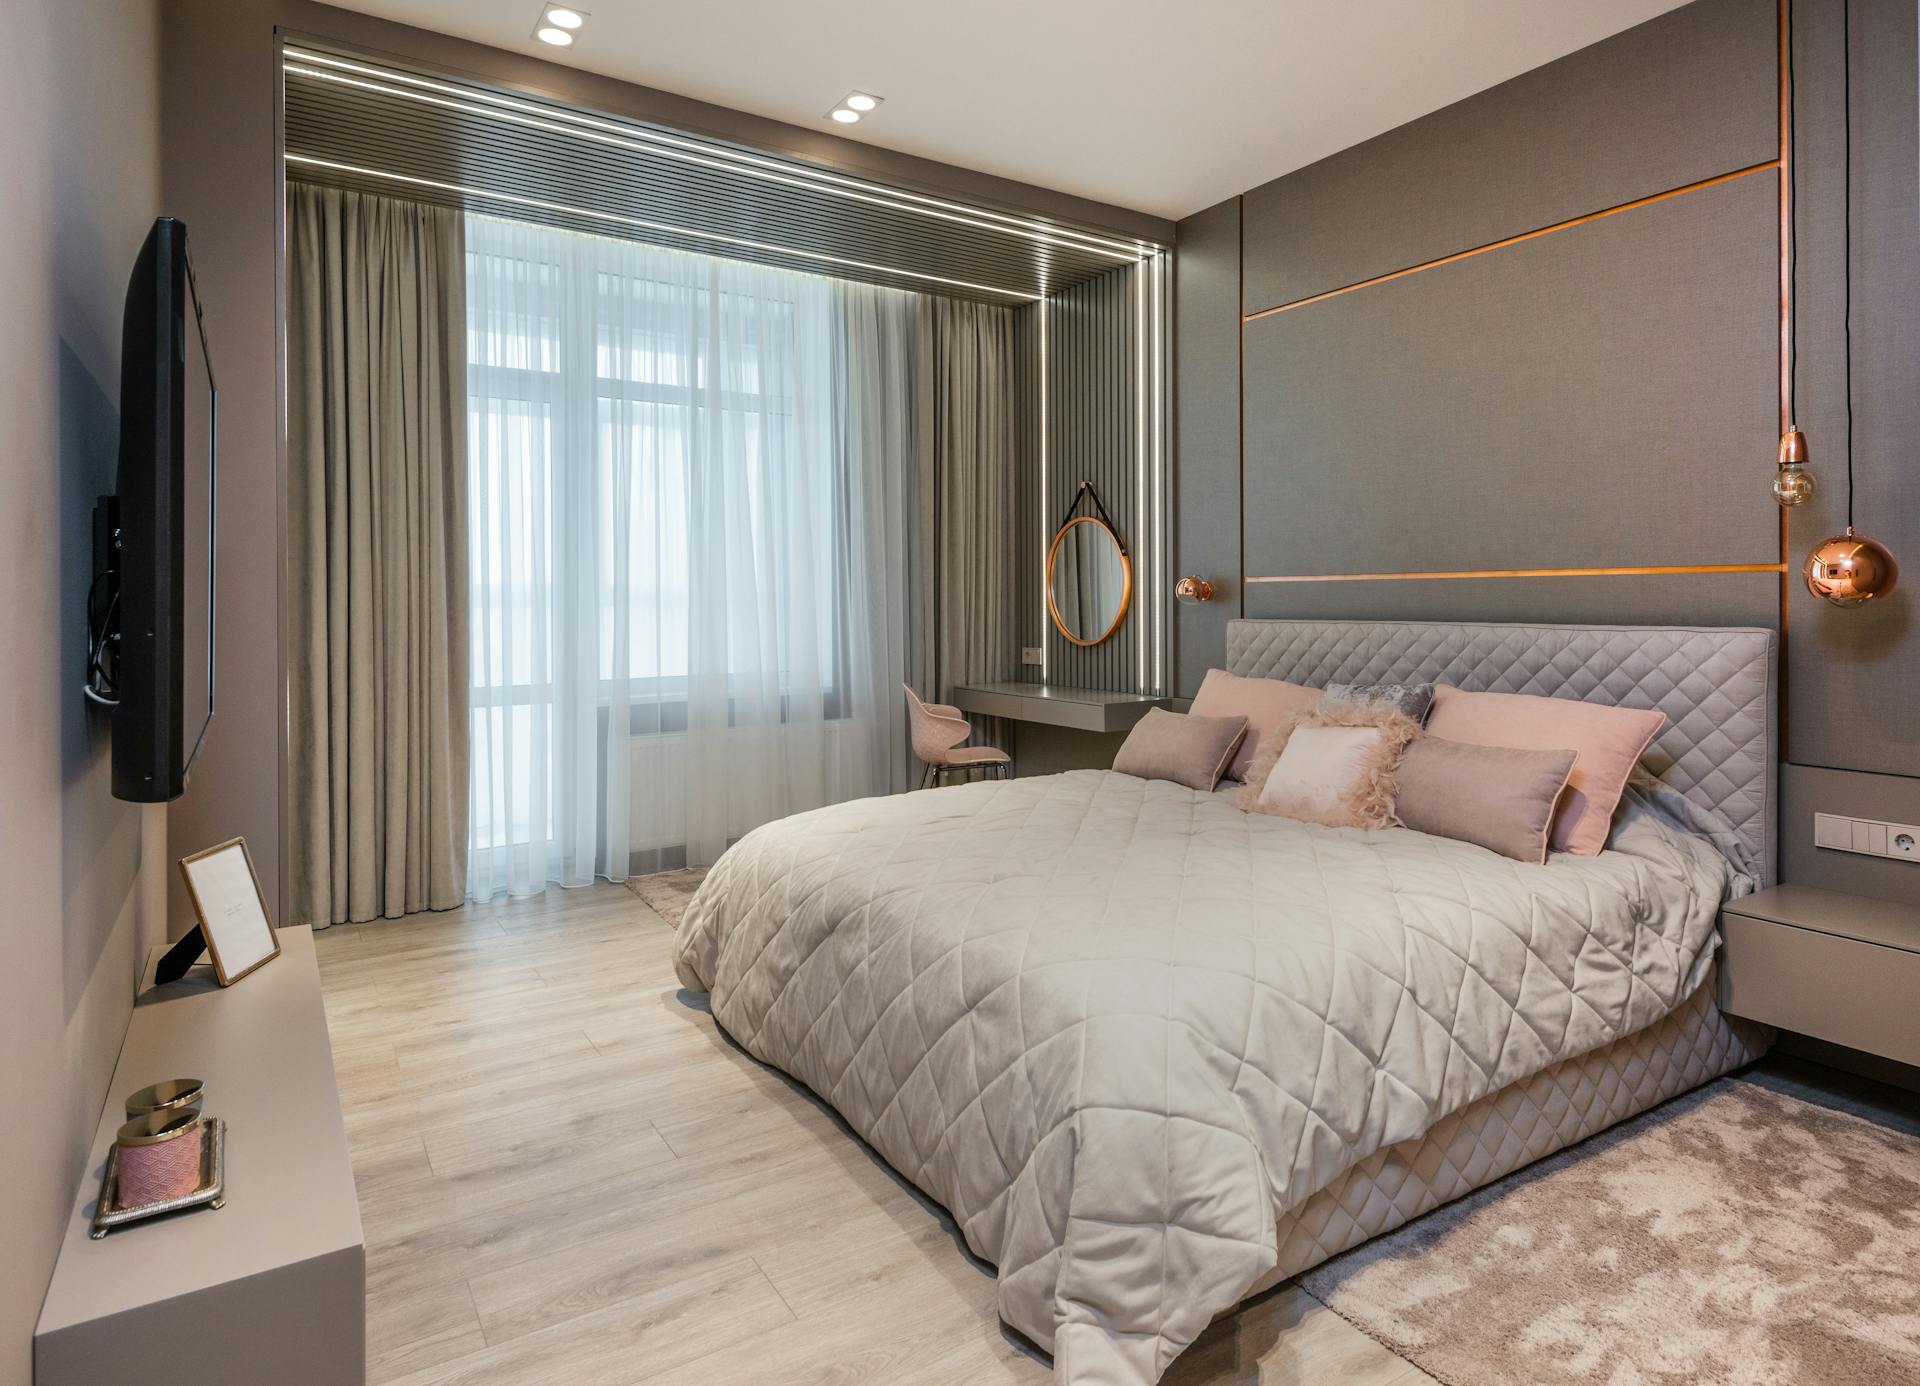 Dormitorio con estilo | Foto: Pexels